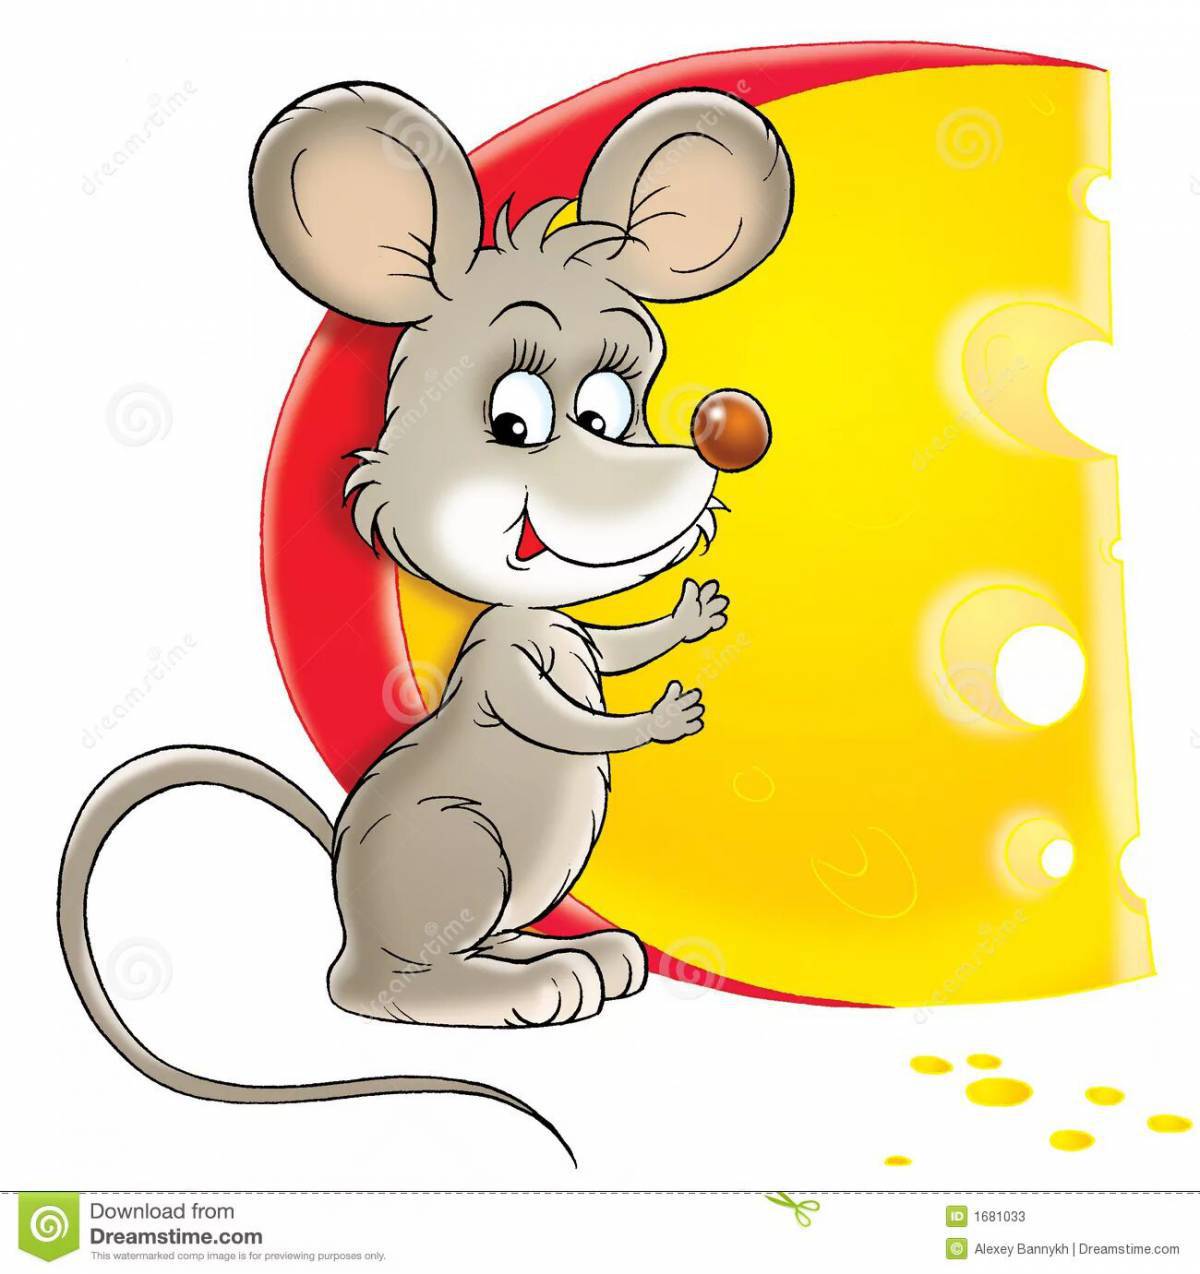 Мышка с сыром #4